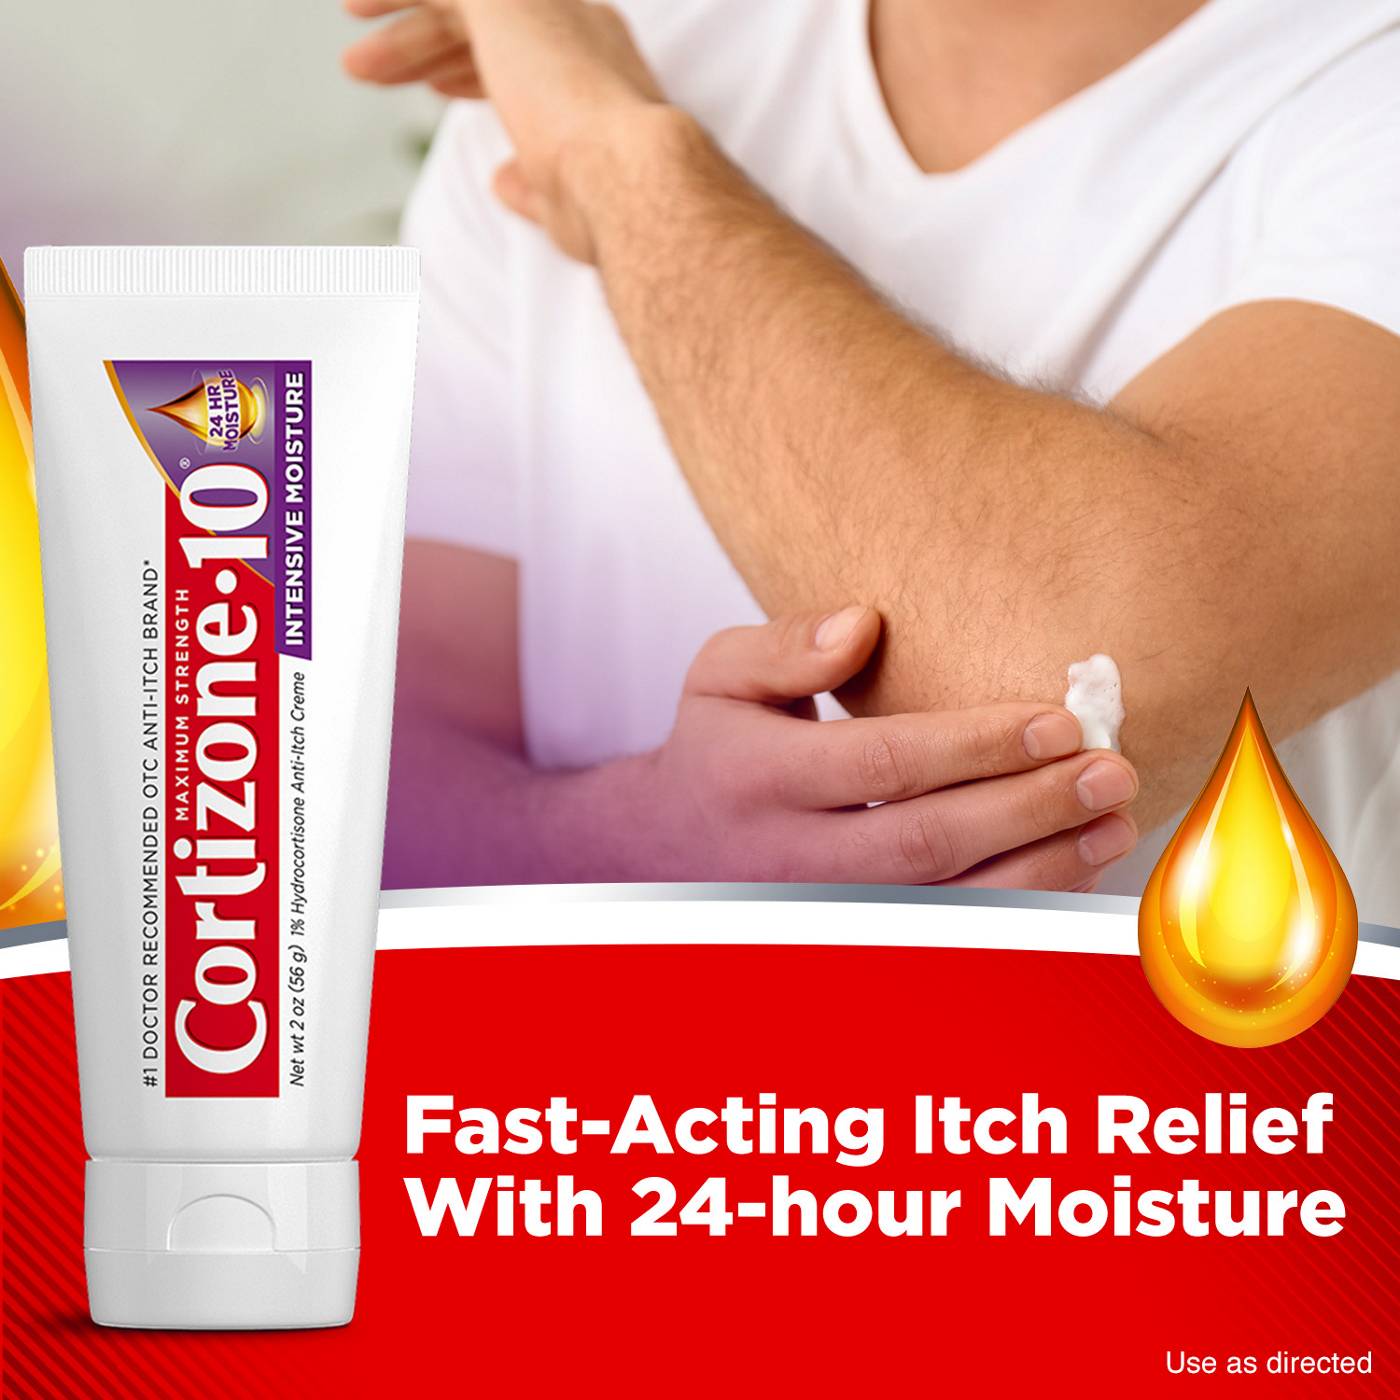 Cortizone 10 Intensive Moisture Anti-Itch Cream; image 6 of 9